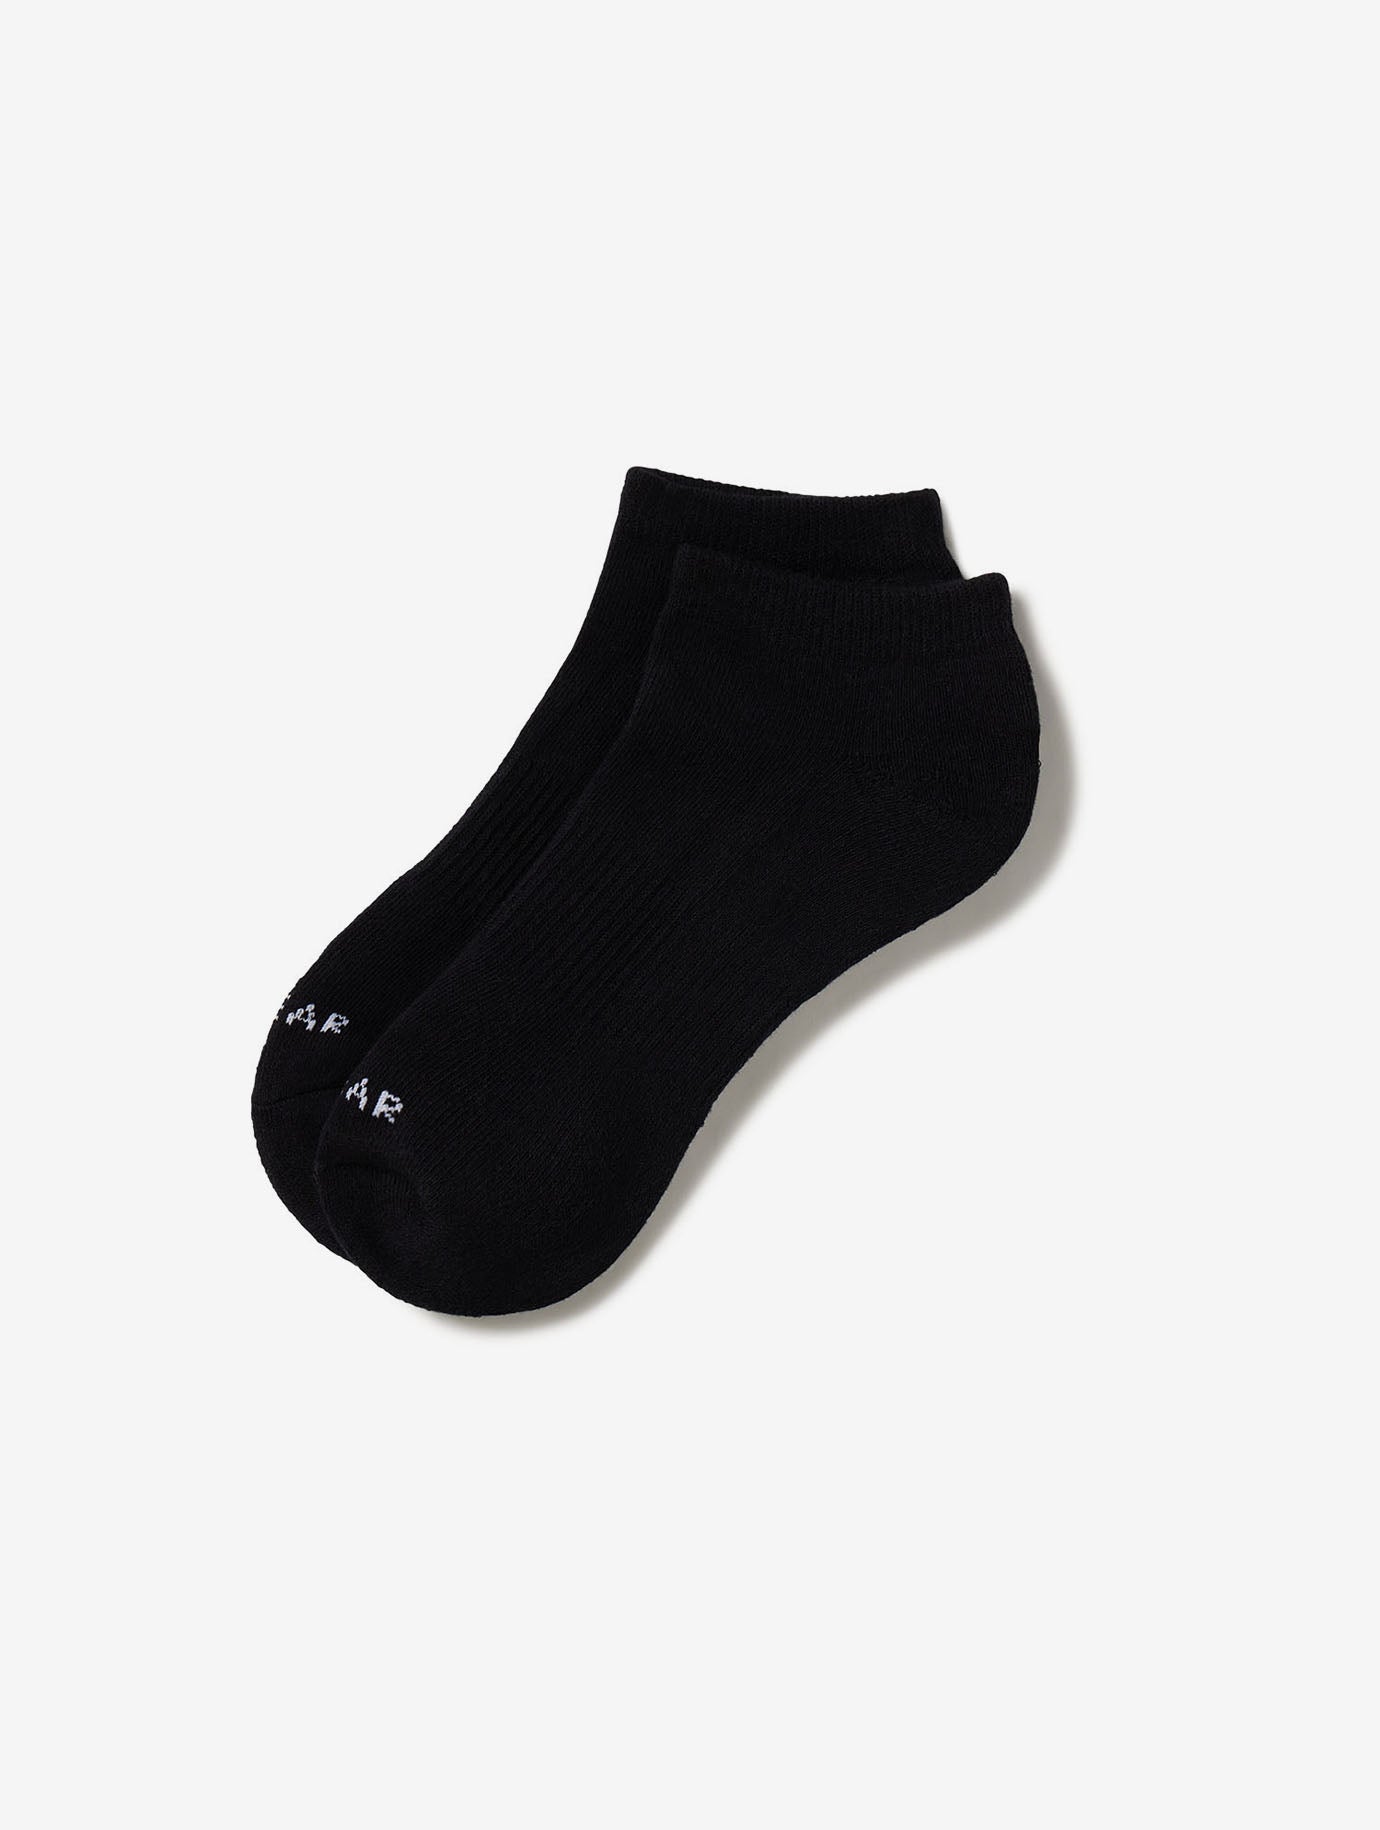 Allwear Organic Ankle Socks - Allwear